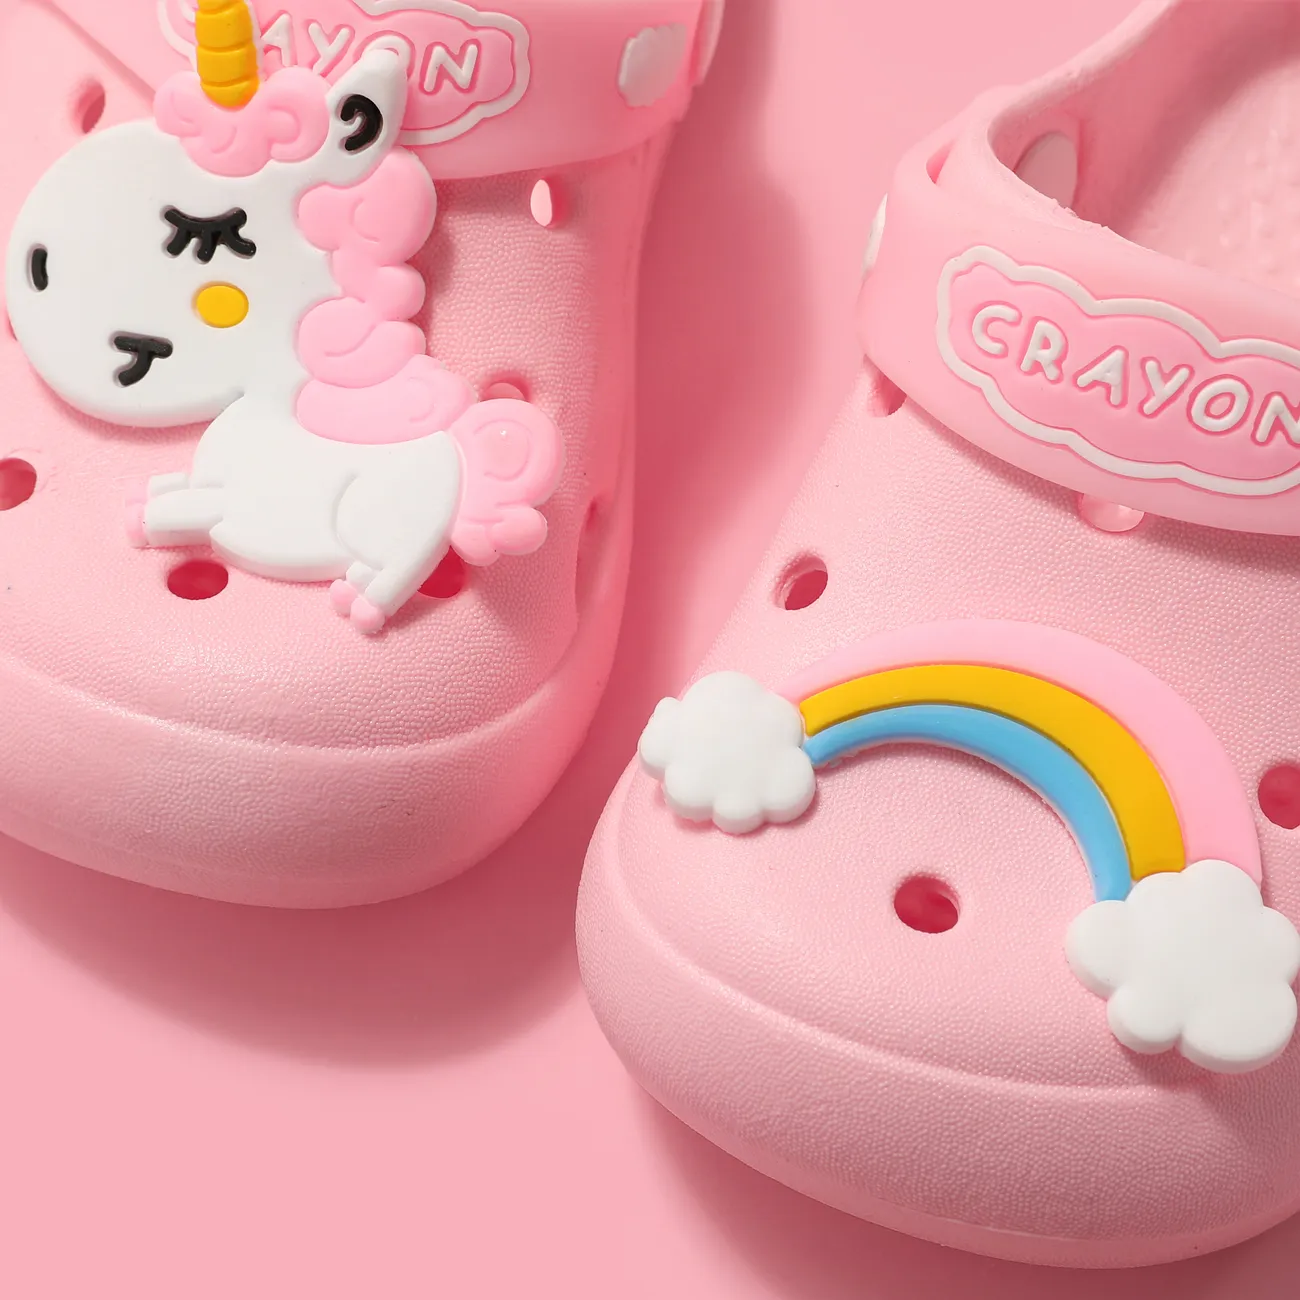 Toddler/Kids Girl Childlike Graffiti Rainbow and Unicorn Pattern Hole Beach Shoes Pink big image 1